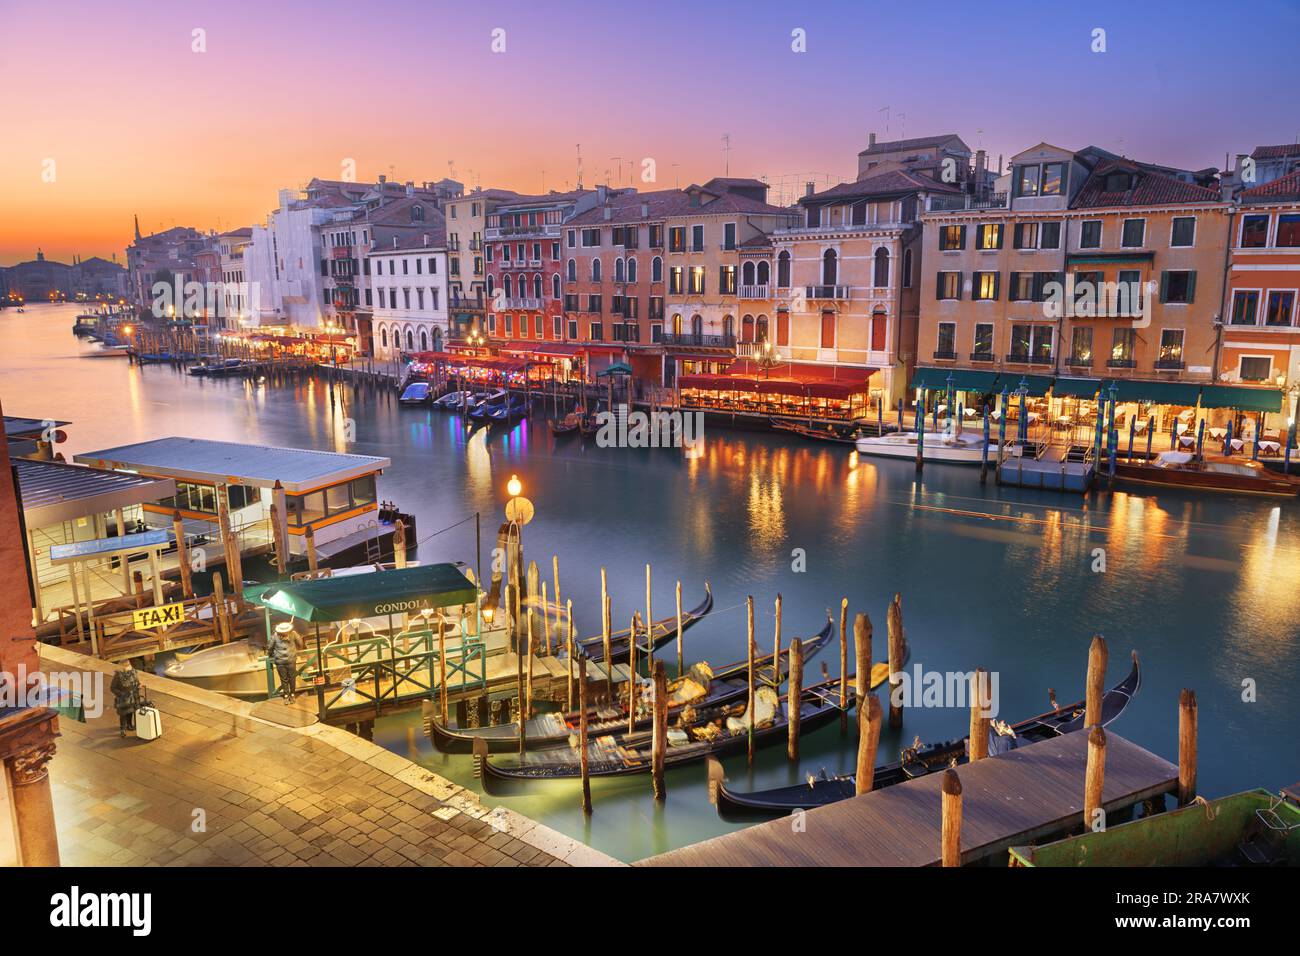 Venise, Italie, vue sur les bateaux et les gondoles dans le Grand Canal au crépuscule. Banque D'Images